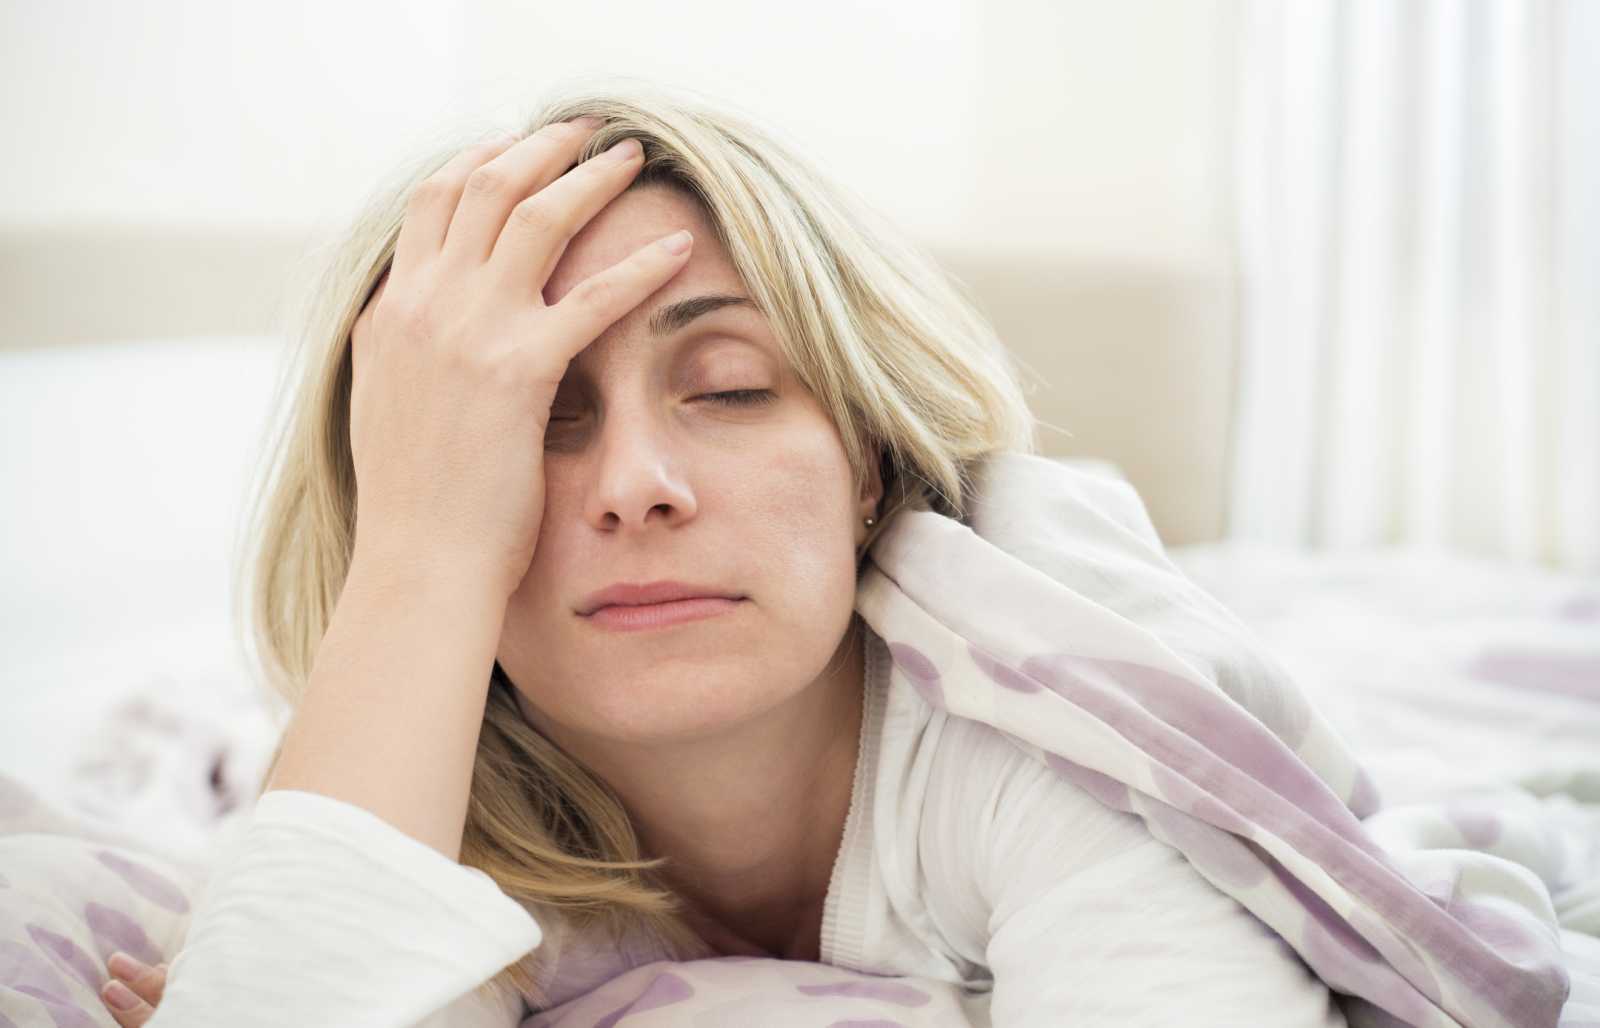 Γυναίκες προσοχή: Το σημάδι στον ύπνο που μπορεί να σηματοδοτεί ότι έχετε χαμηλά επίπεδα οιστρογόνων